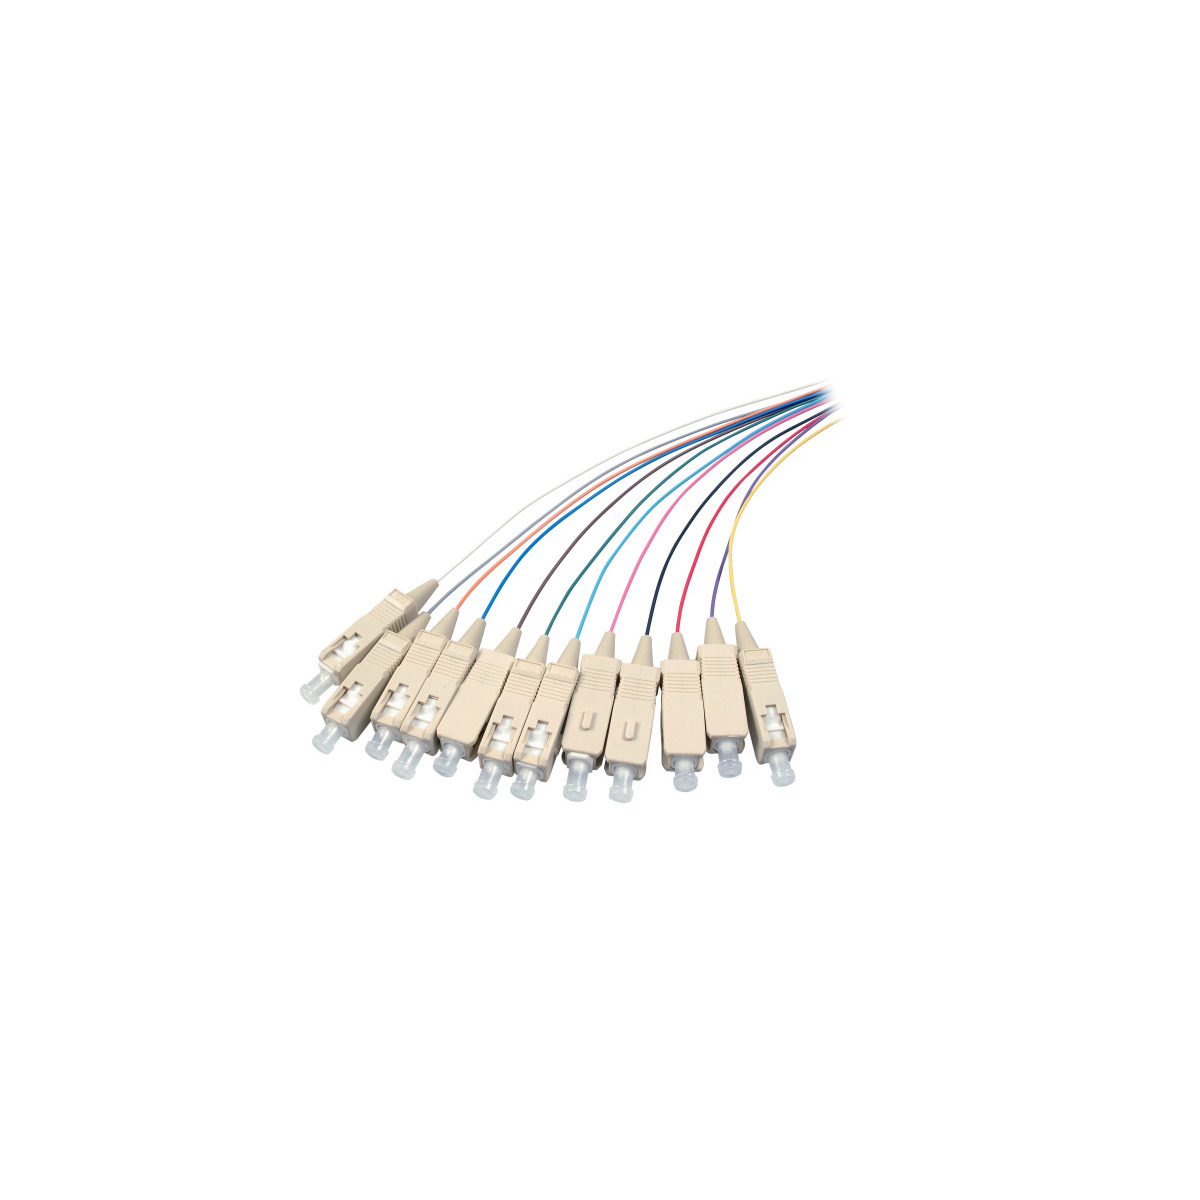 COMMUNIK Kabel Pigtails / Glasfaserkabel, Faserpigtails, m SC 2